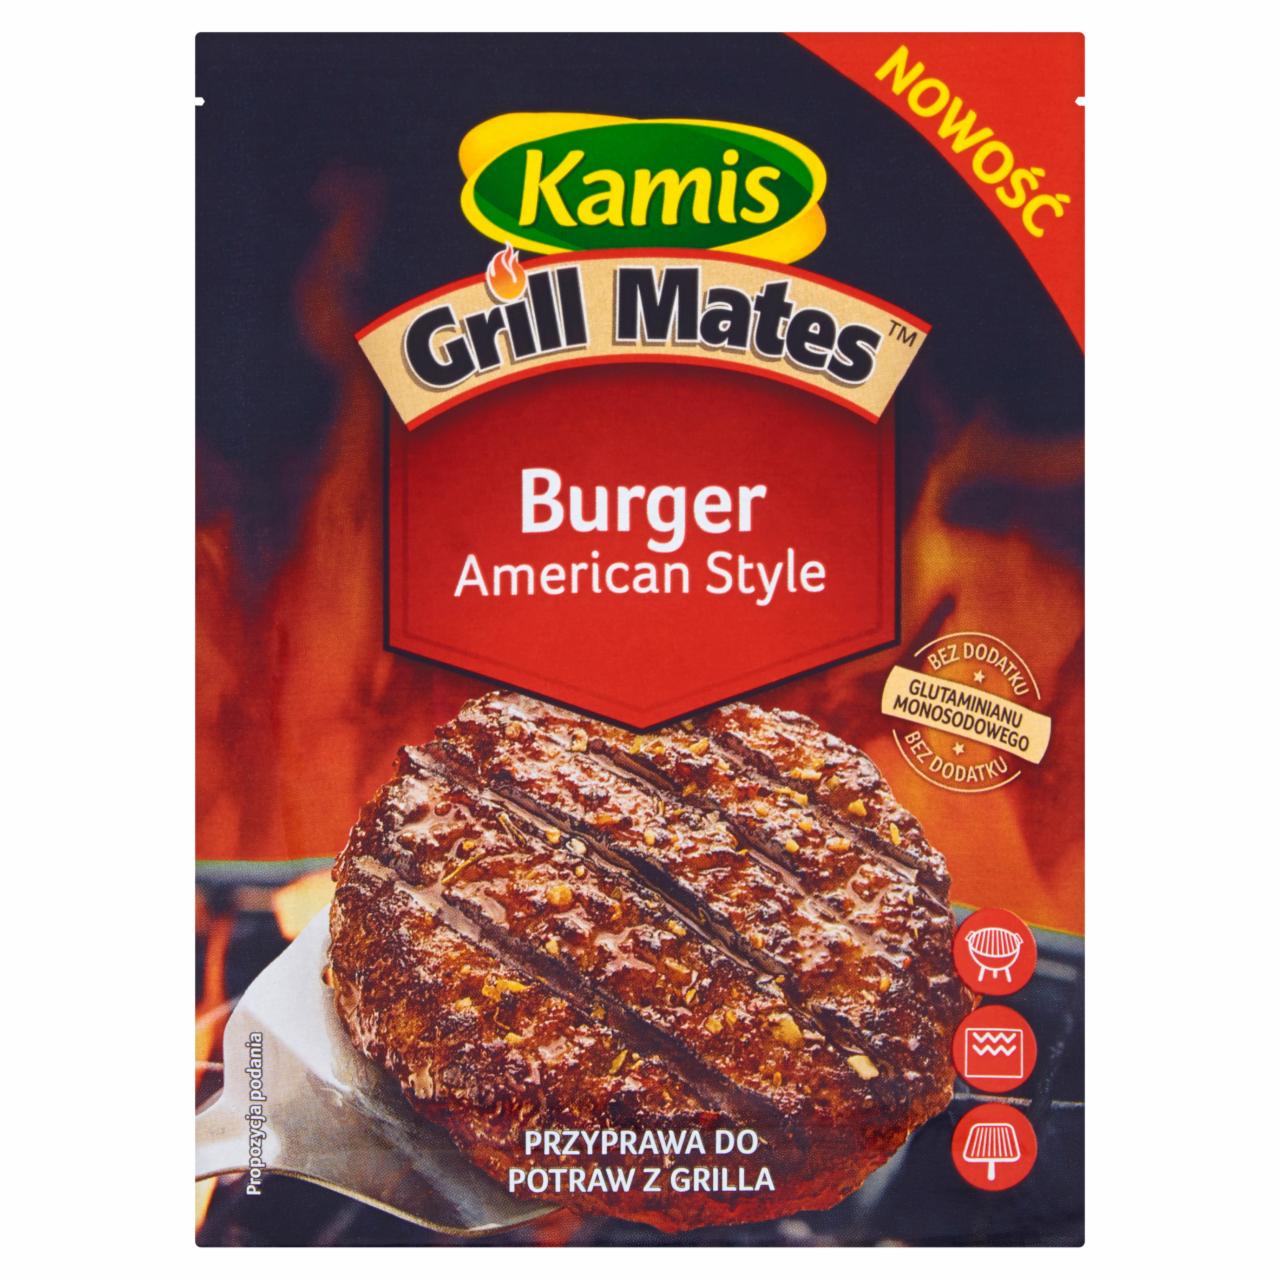 Zdjęcia - Kamis Grill Mates Burger American Style Przyprawa do potraw z grilla 20 g